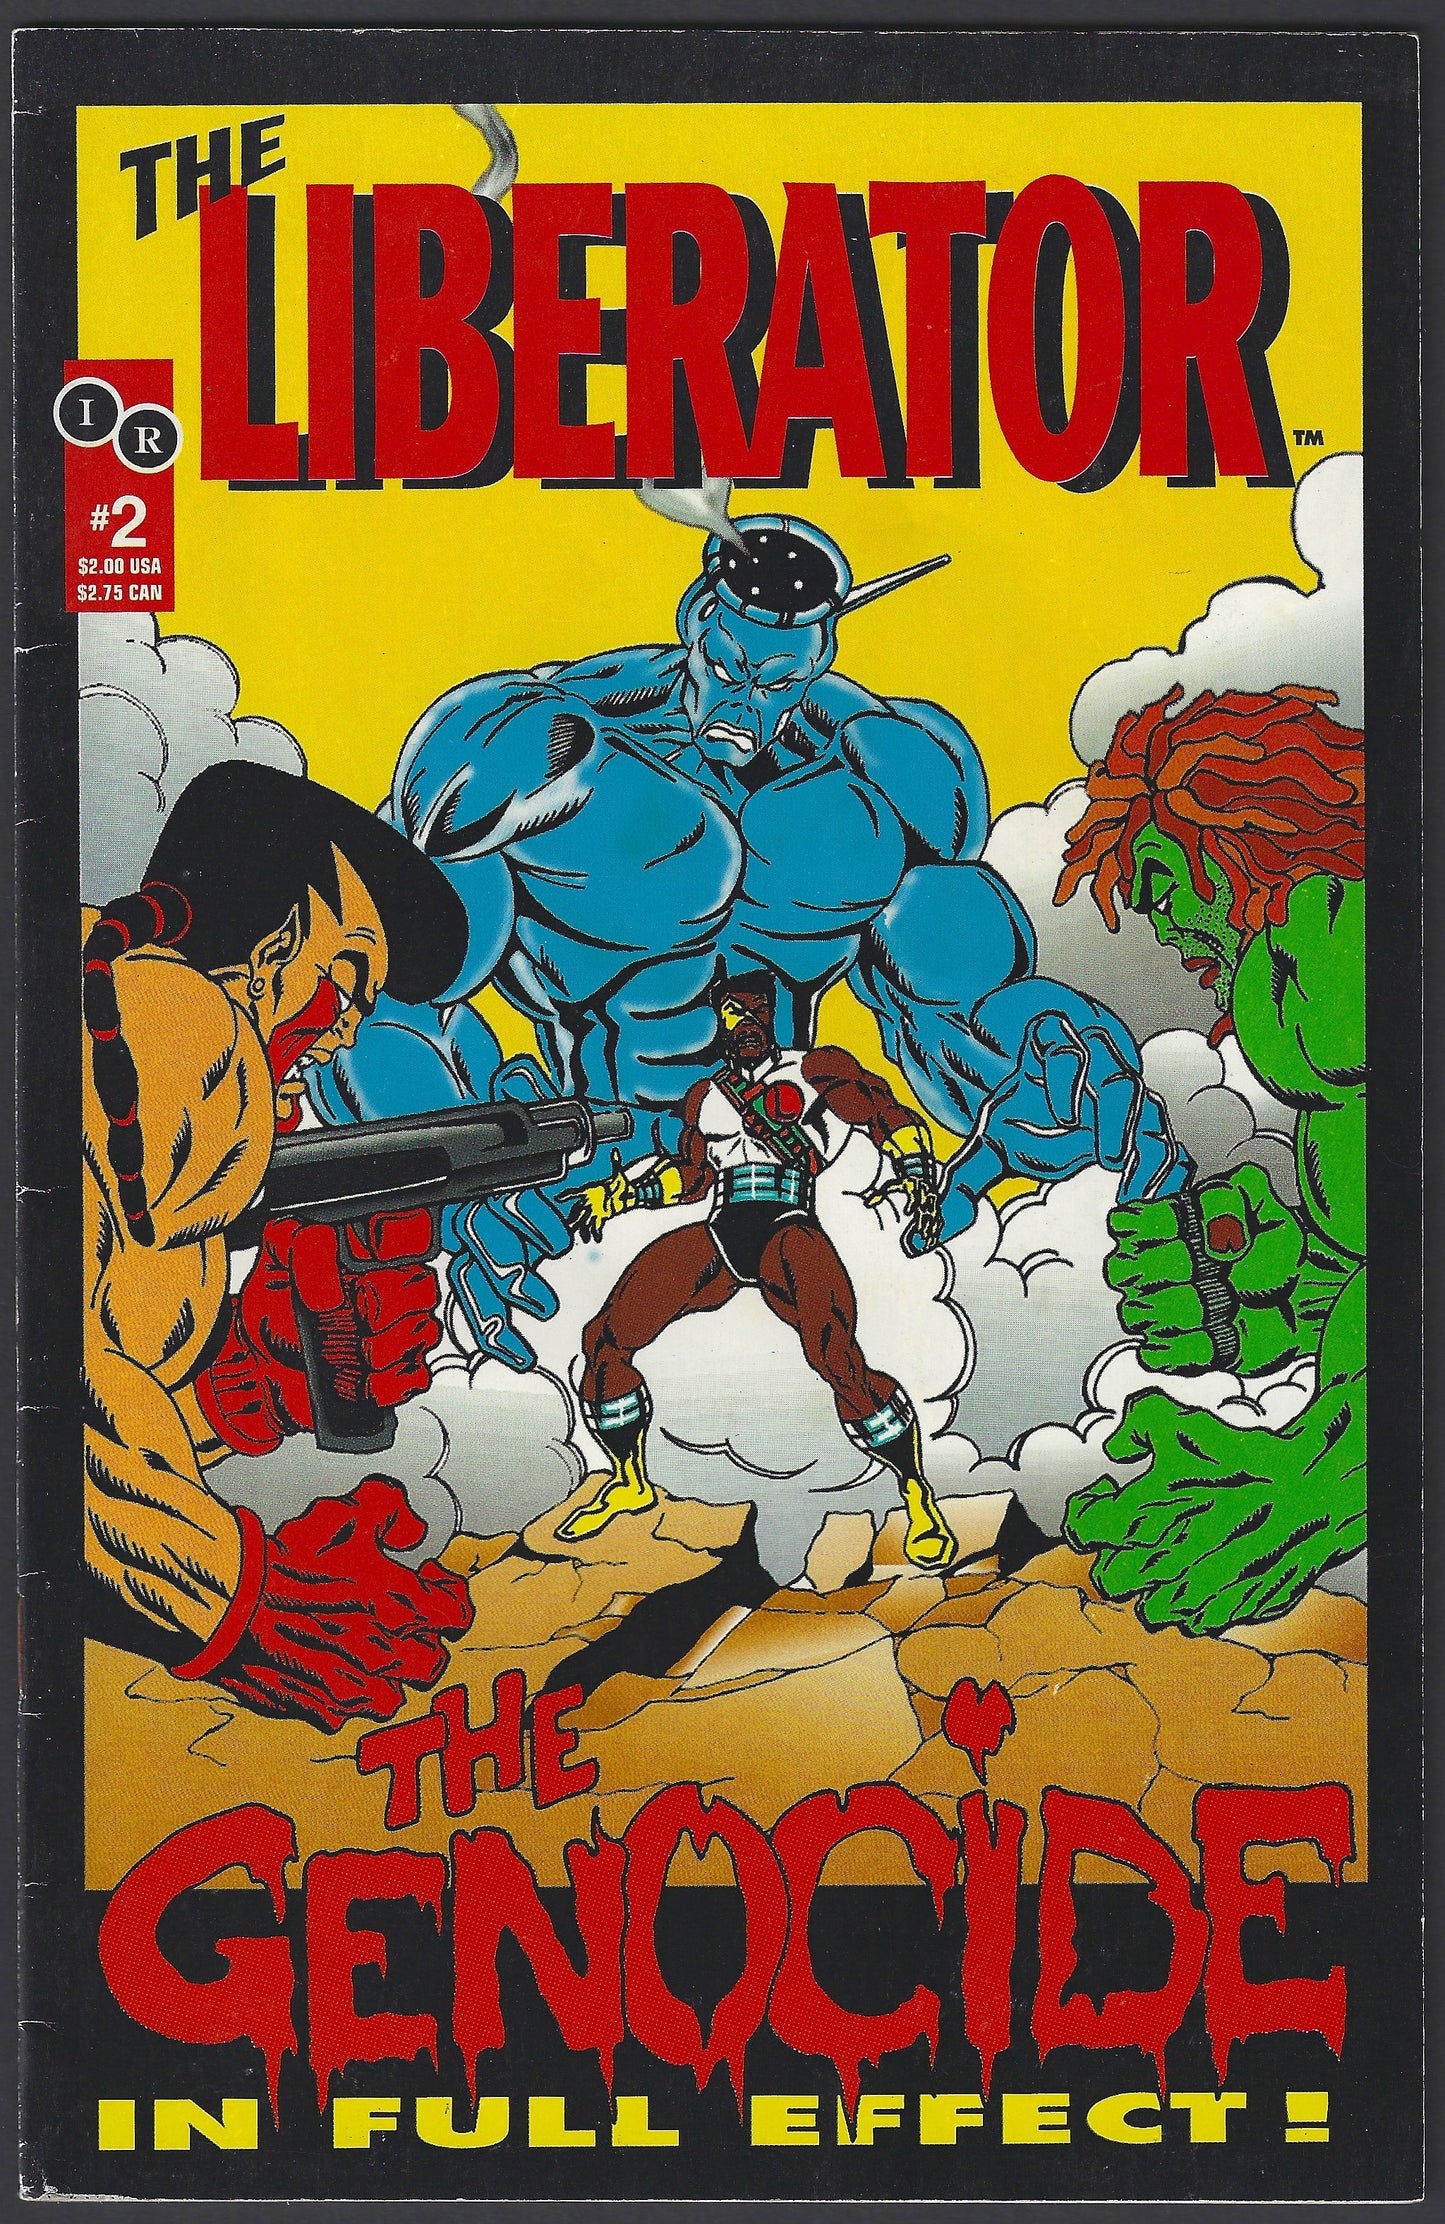 The Liberator #2 1993